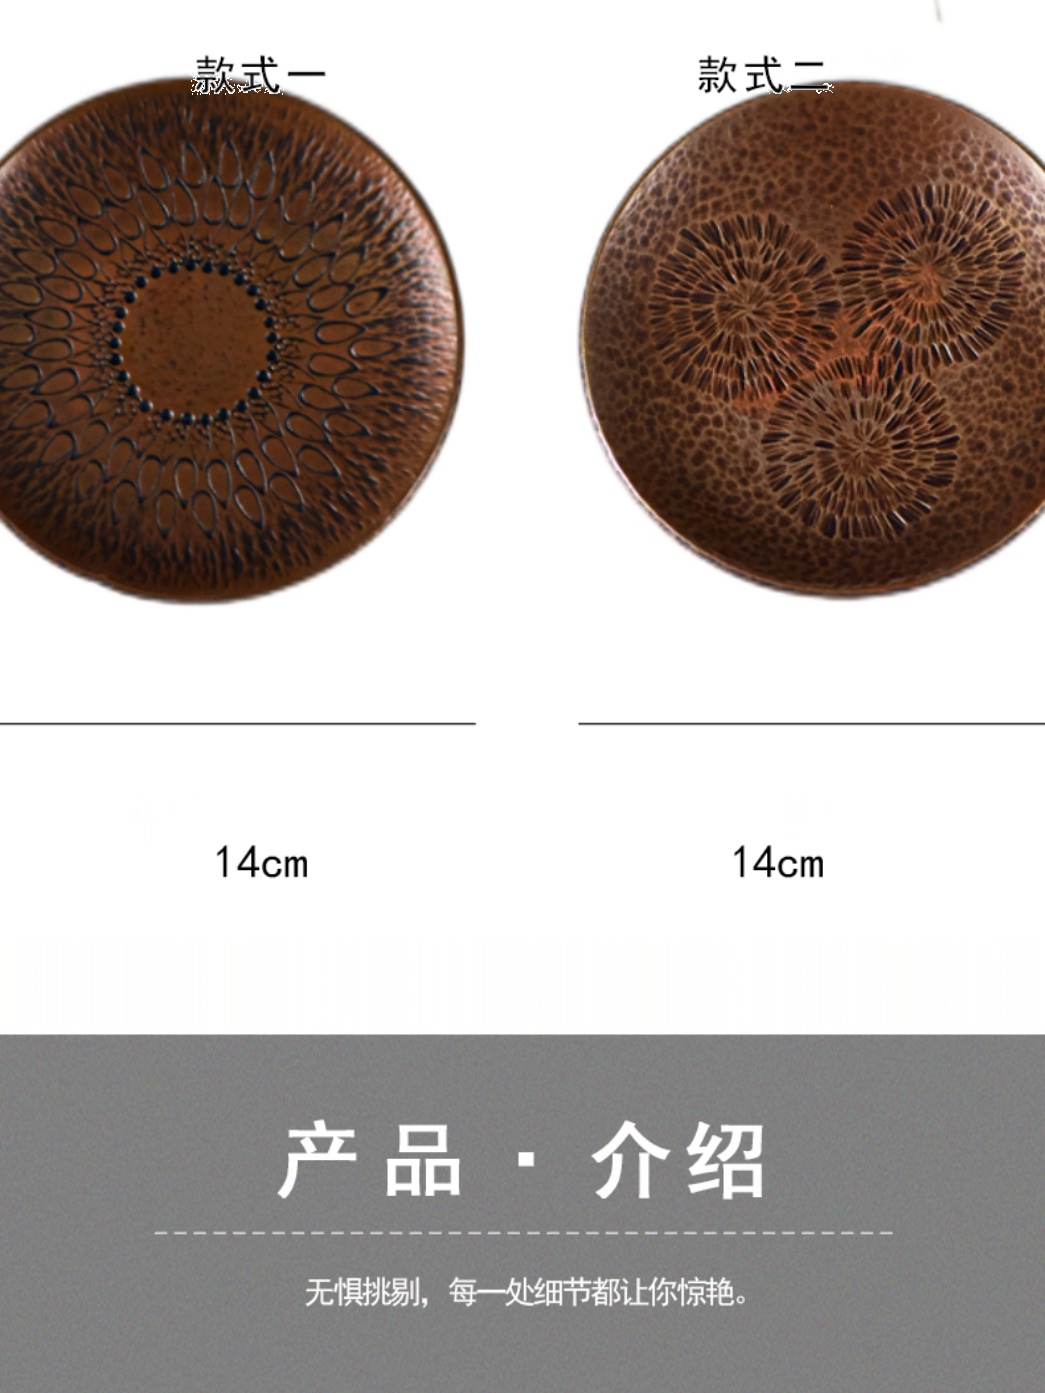 中式茶具手工雕刻鹧鸪纹紫铜壶承干泡台禅意古朴壶承盘茶承小茶盘